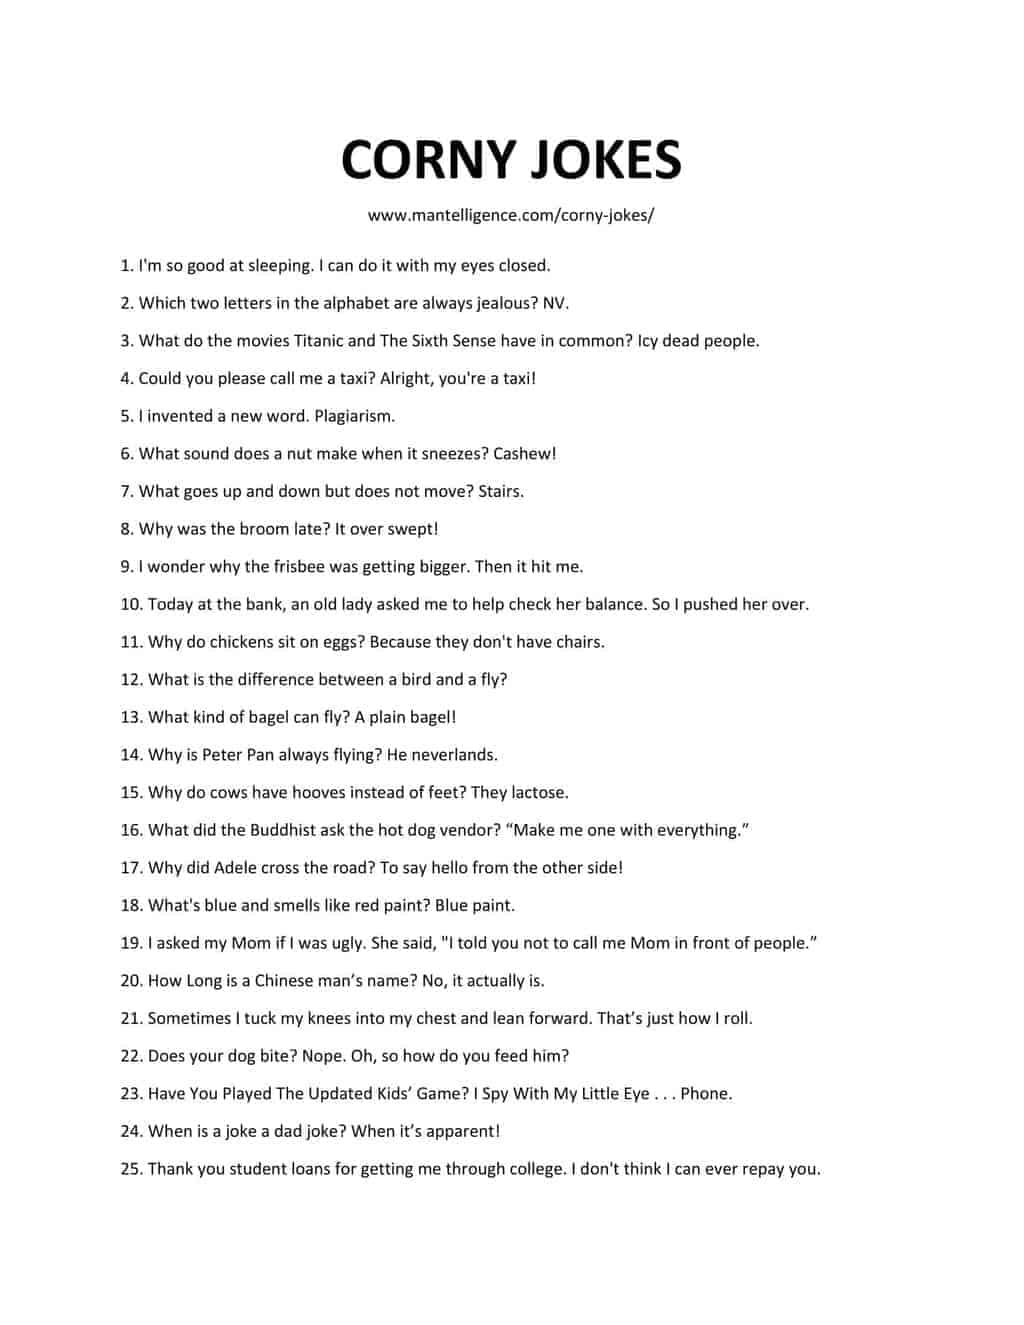 Downloadabl list of corny jokes